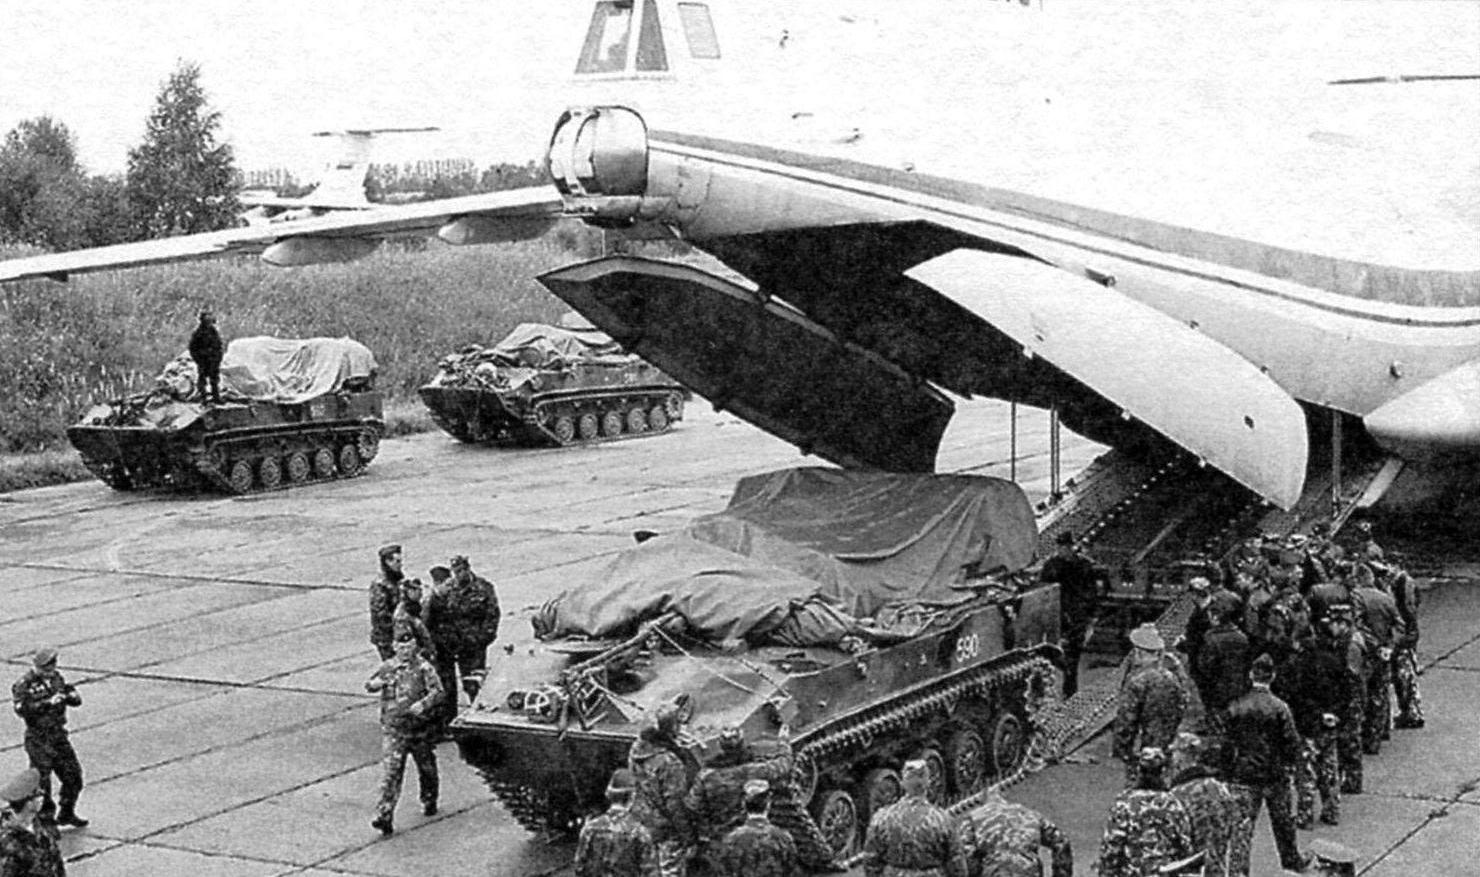 Загрузка снаряжённой машины в грузовую кабину самолёта Ил-76